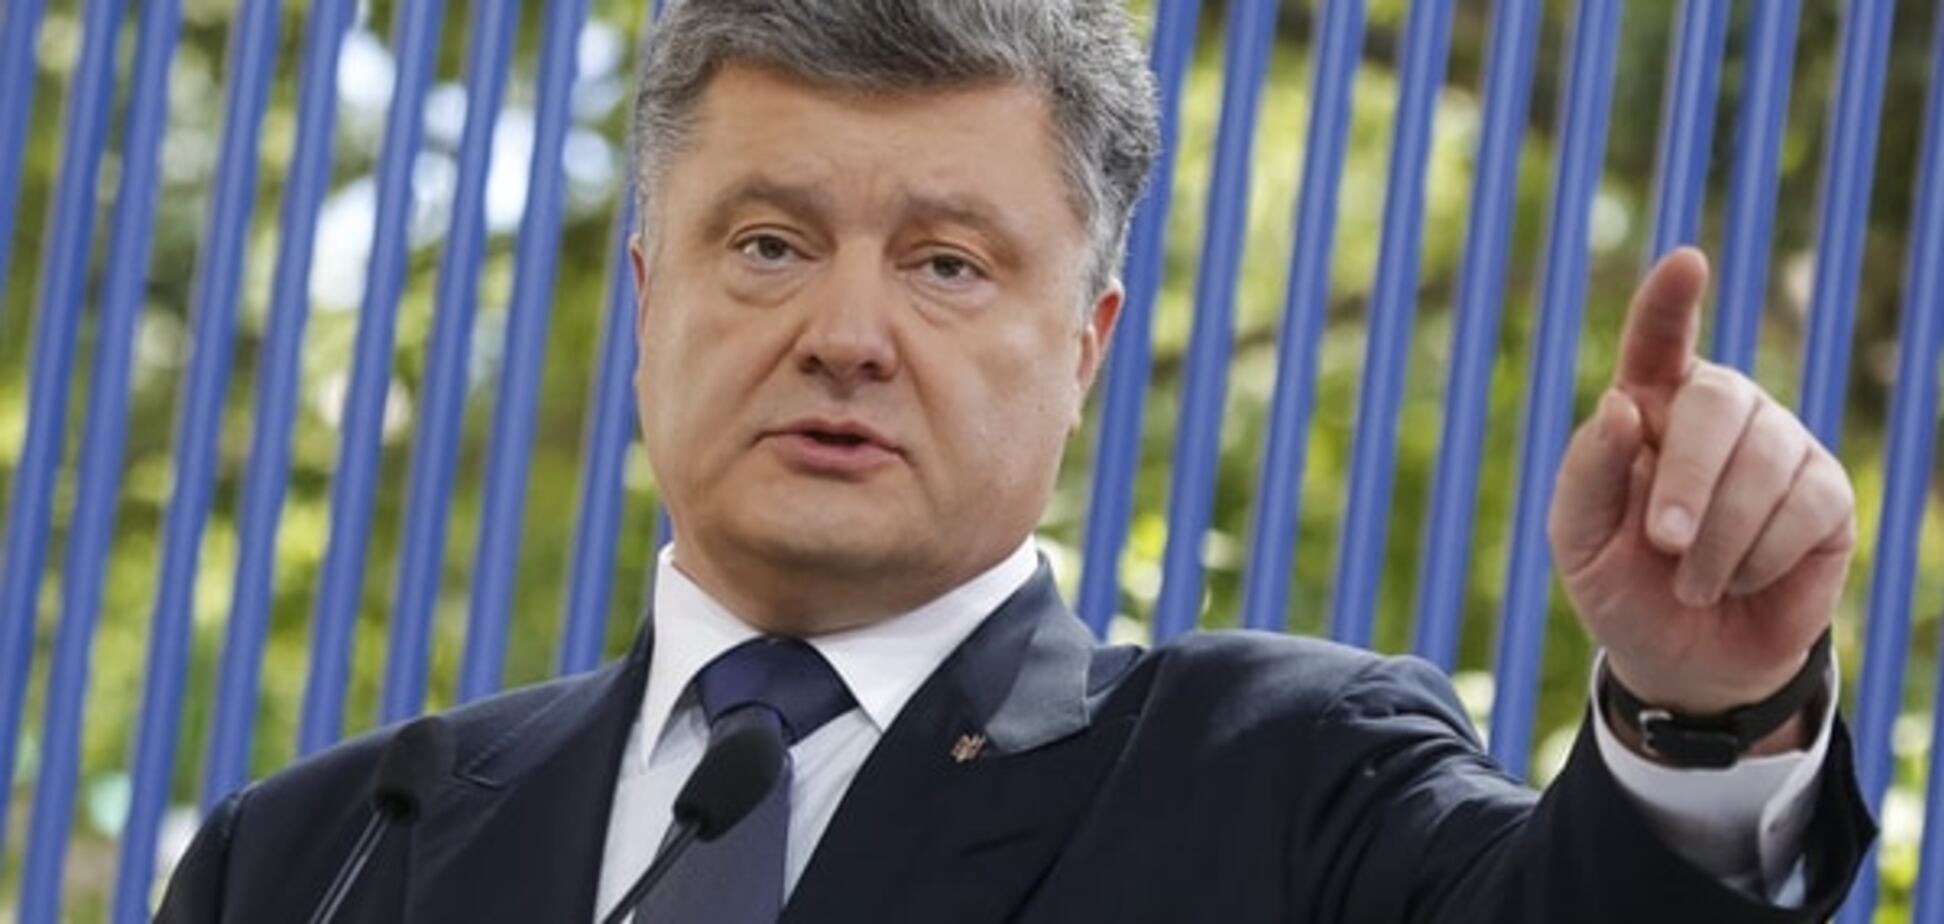 Порошенко подписал закон, которым окончательно вернет Донбасс в Украину — эксперт